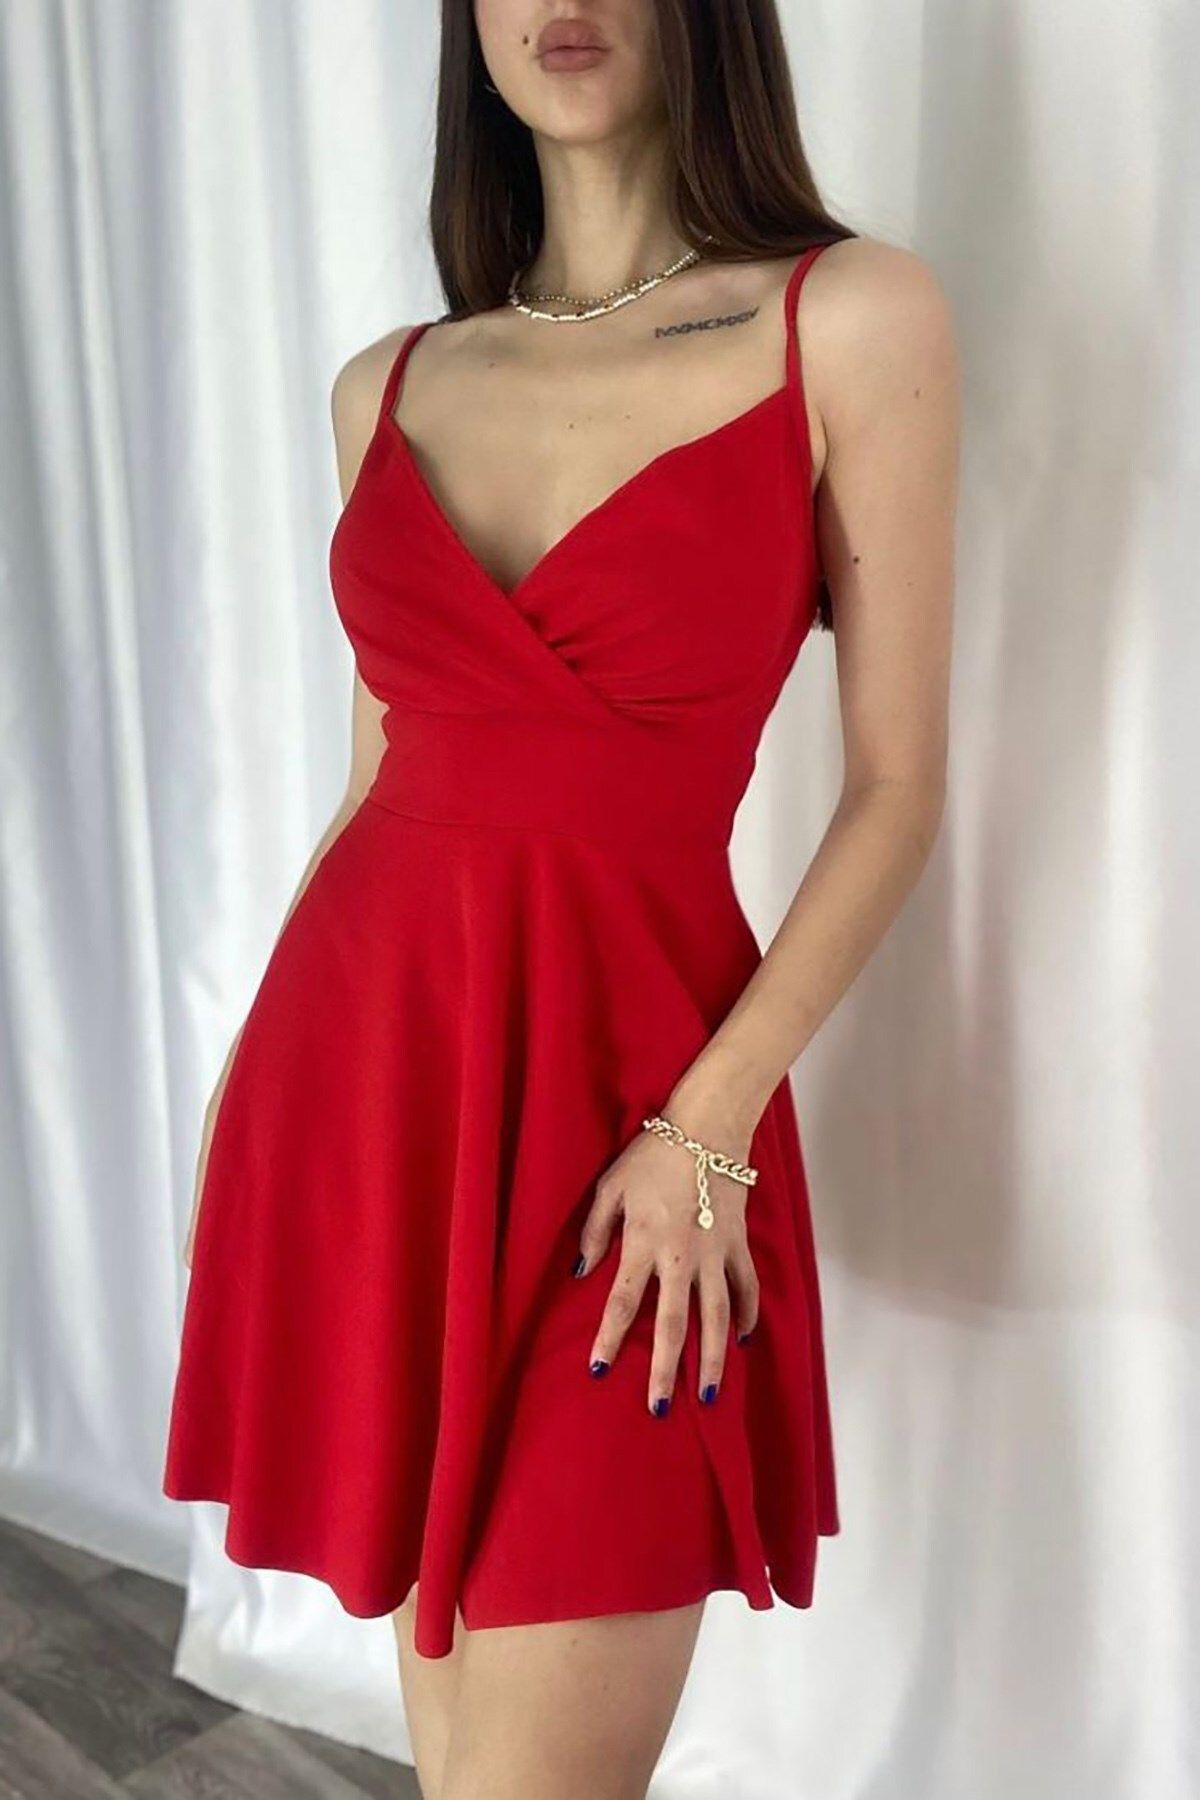 Deafox Krep Kumaş Kırmızı Ince Askılı Kloş Elbise